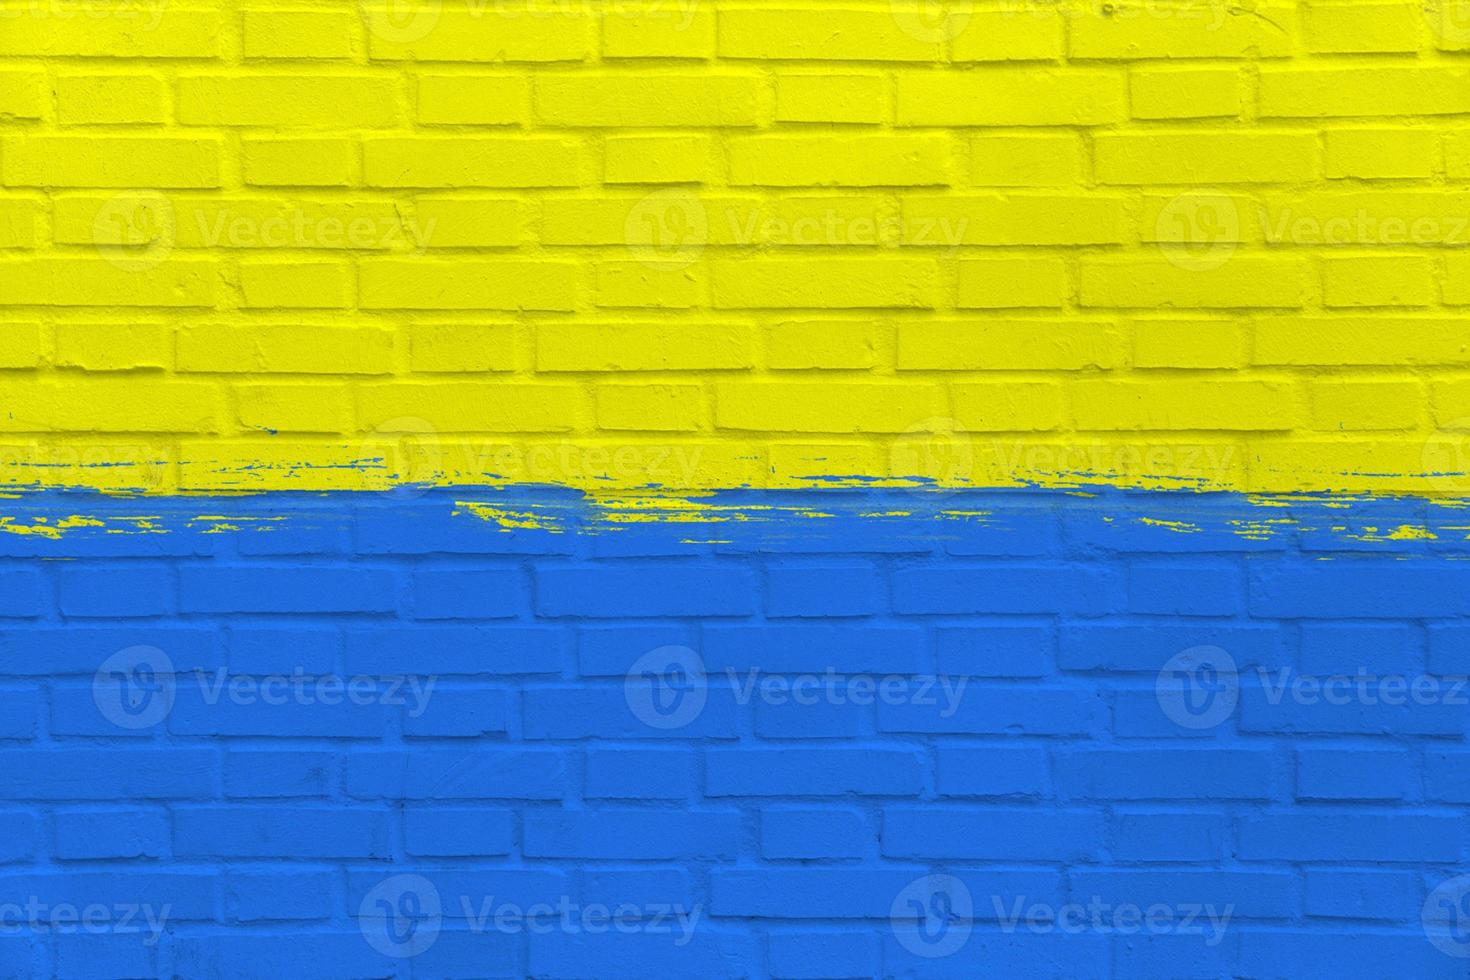 bandera amarilla y azul de ucrania en una pared limpia, gráfico industrial, símbolo de libertad, imagen de estilo grunge, lucha en guerra con rusia, imagen simbólica, textura en la superficie urbana, fondo patriótico foto